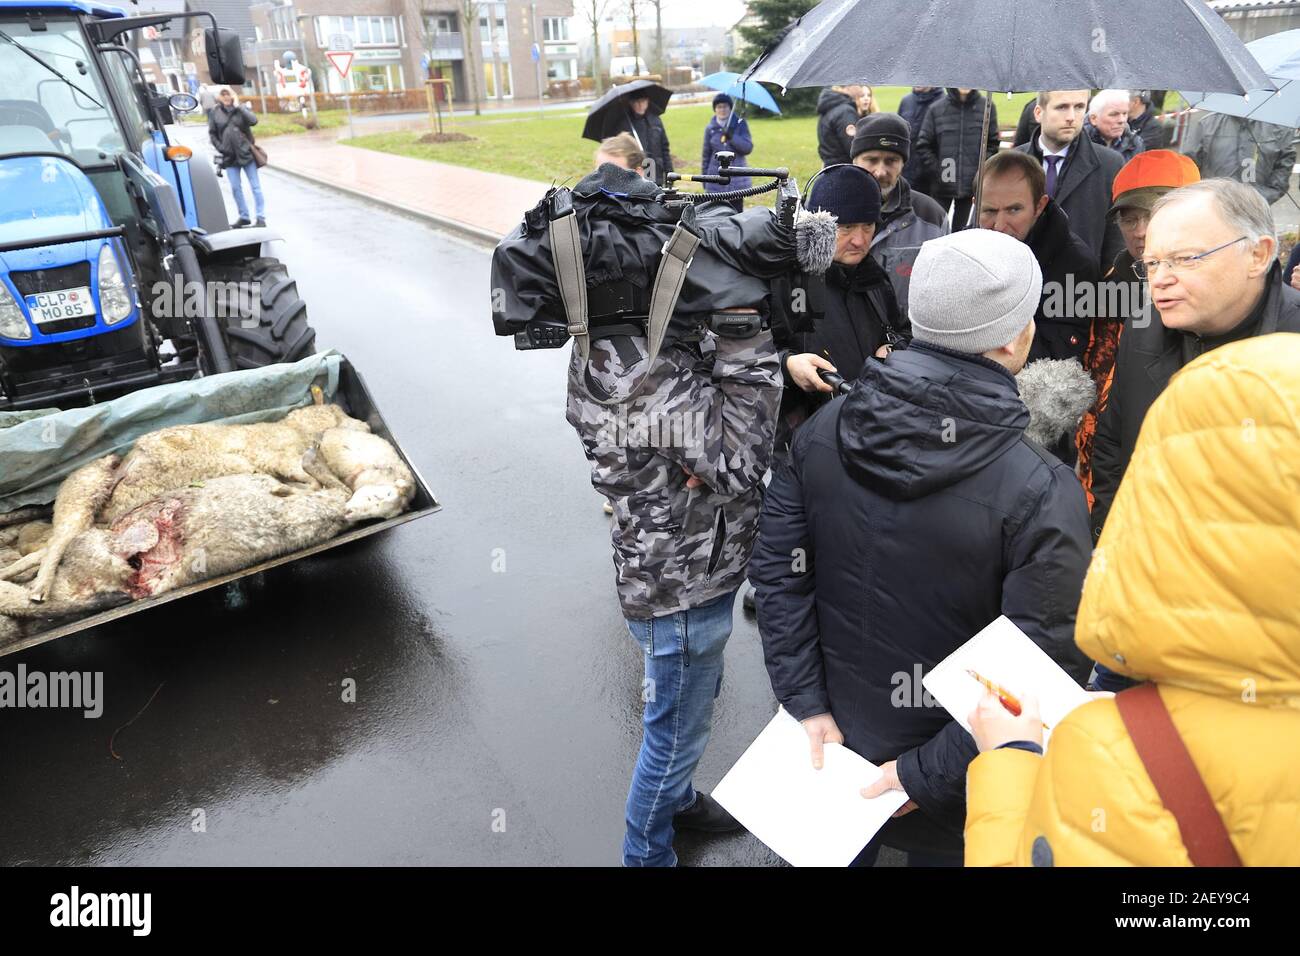 Ministerpräsident Weil zu Besuch in Löningen. Bauern demonstrieren. Grund: Wieder 30 Schafe getötet, Stock Photo